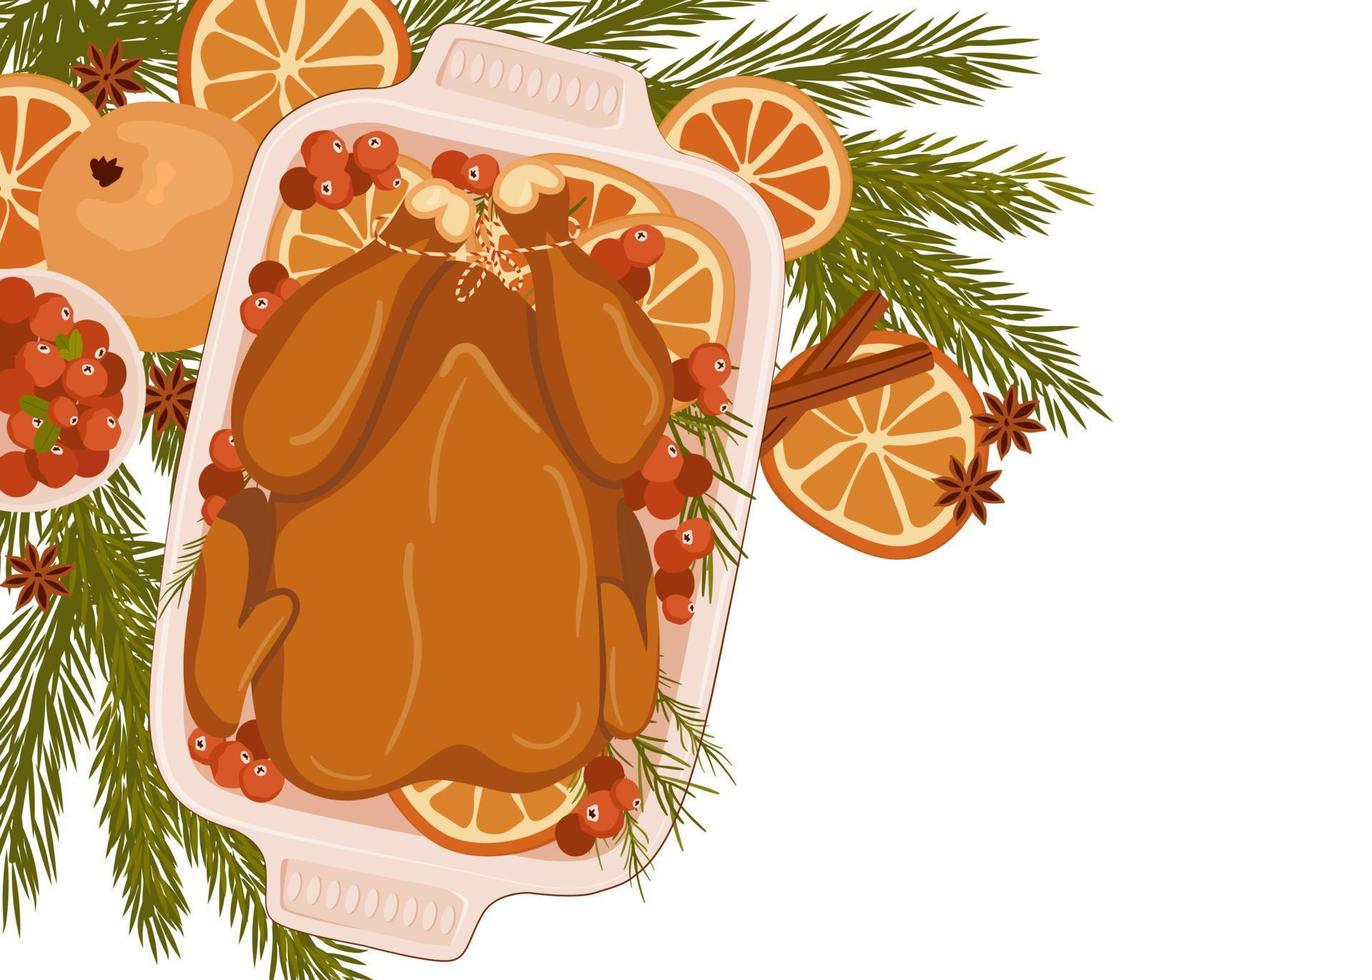 pratos de natal. frango assado ou peru grelhado com cranberries, laranja e alecrim isolado no fundo branco. conceito de comida de natal. ilustração vetorial vetor